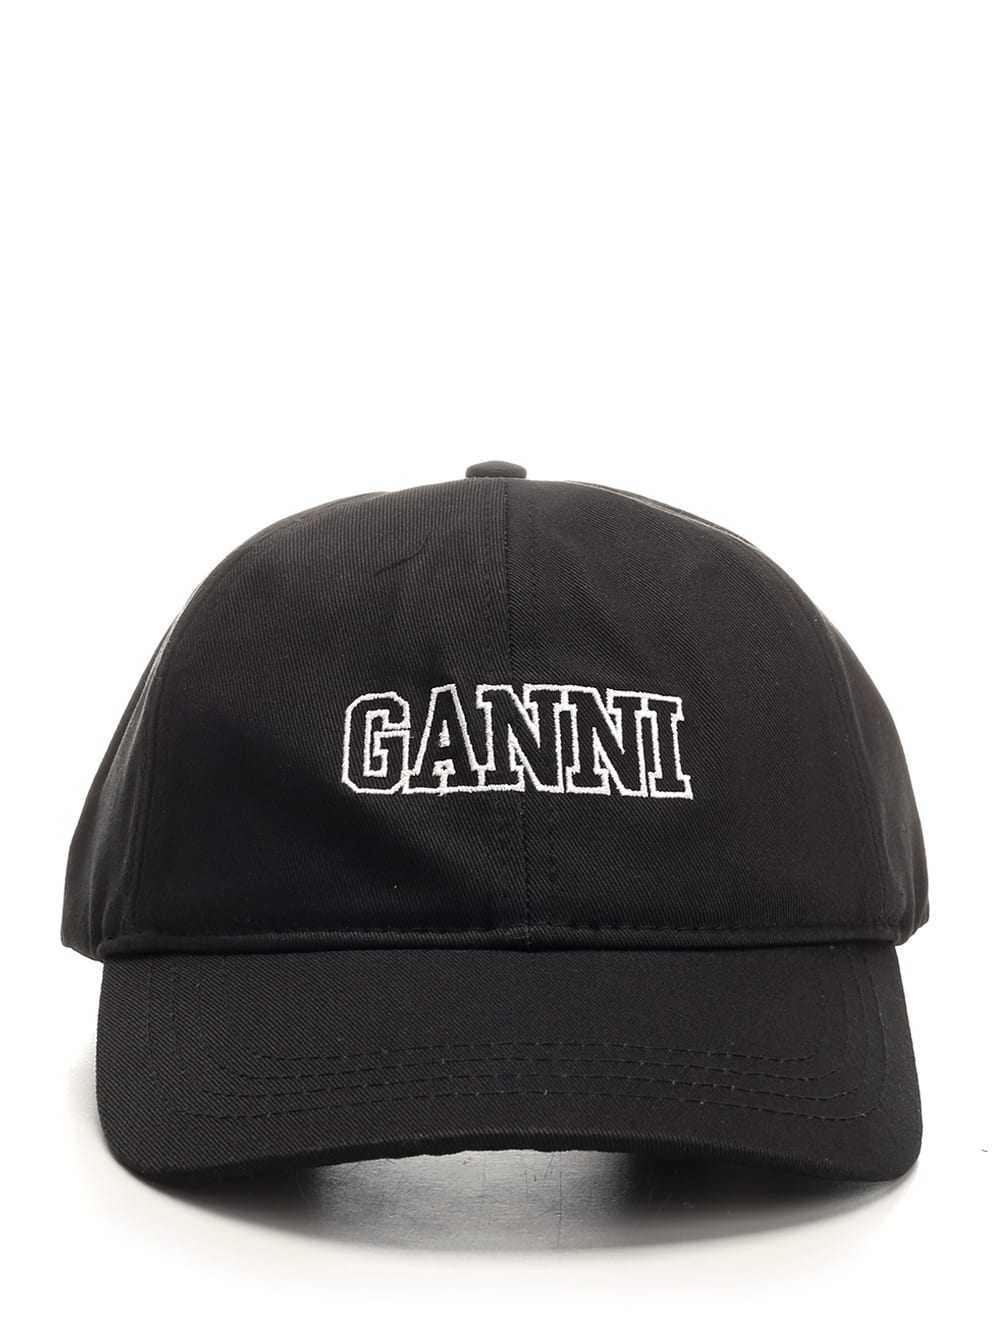 GANNI SIGNATURE BASEBALL CAP